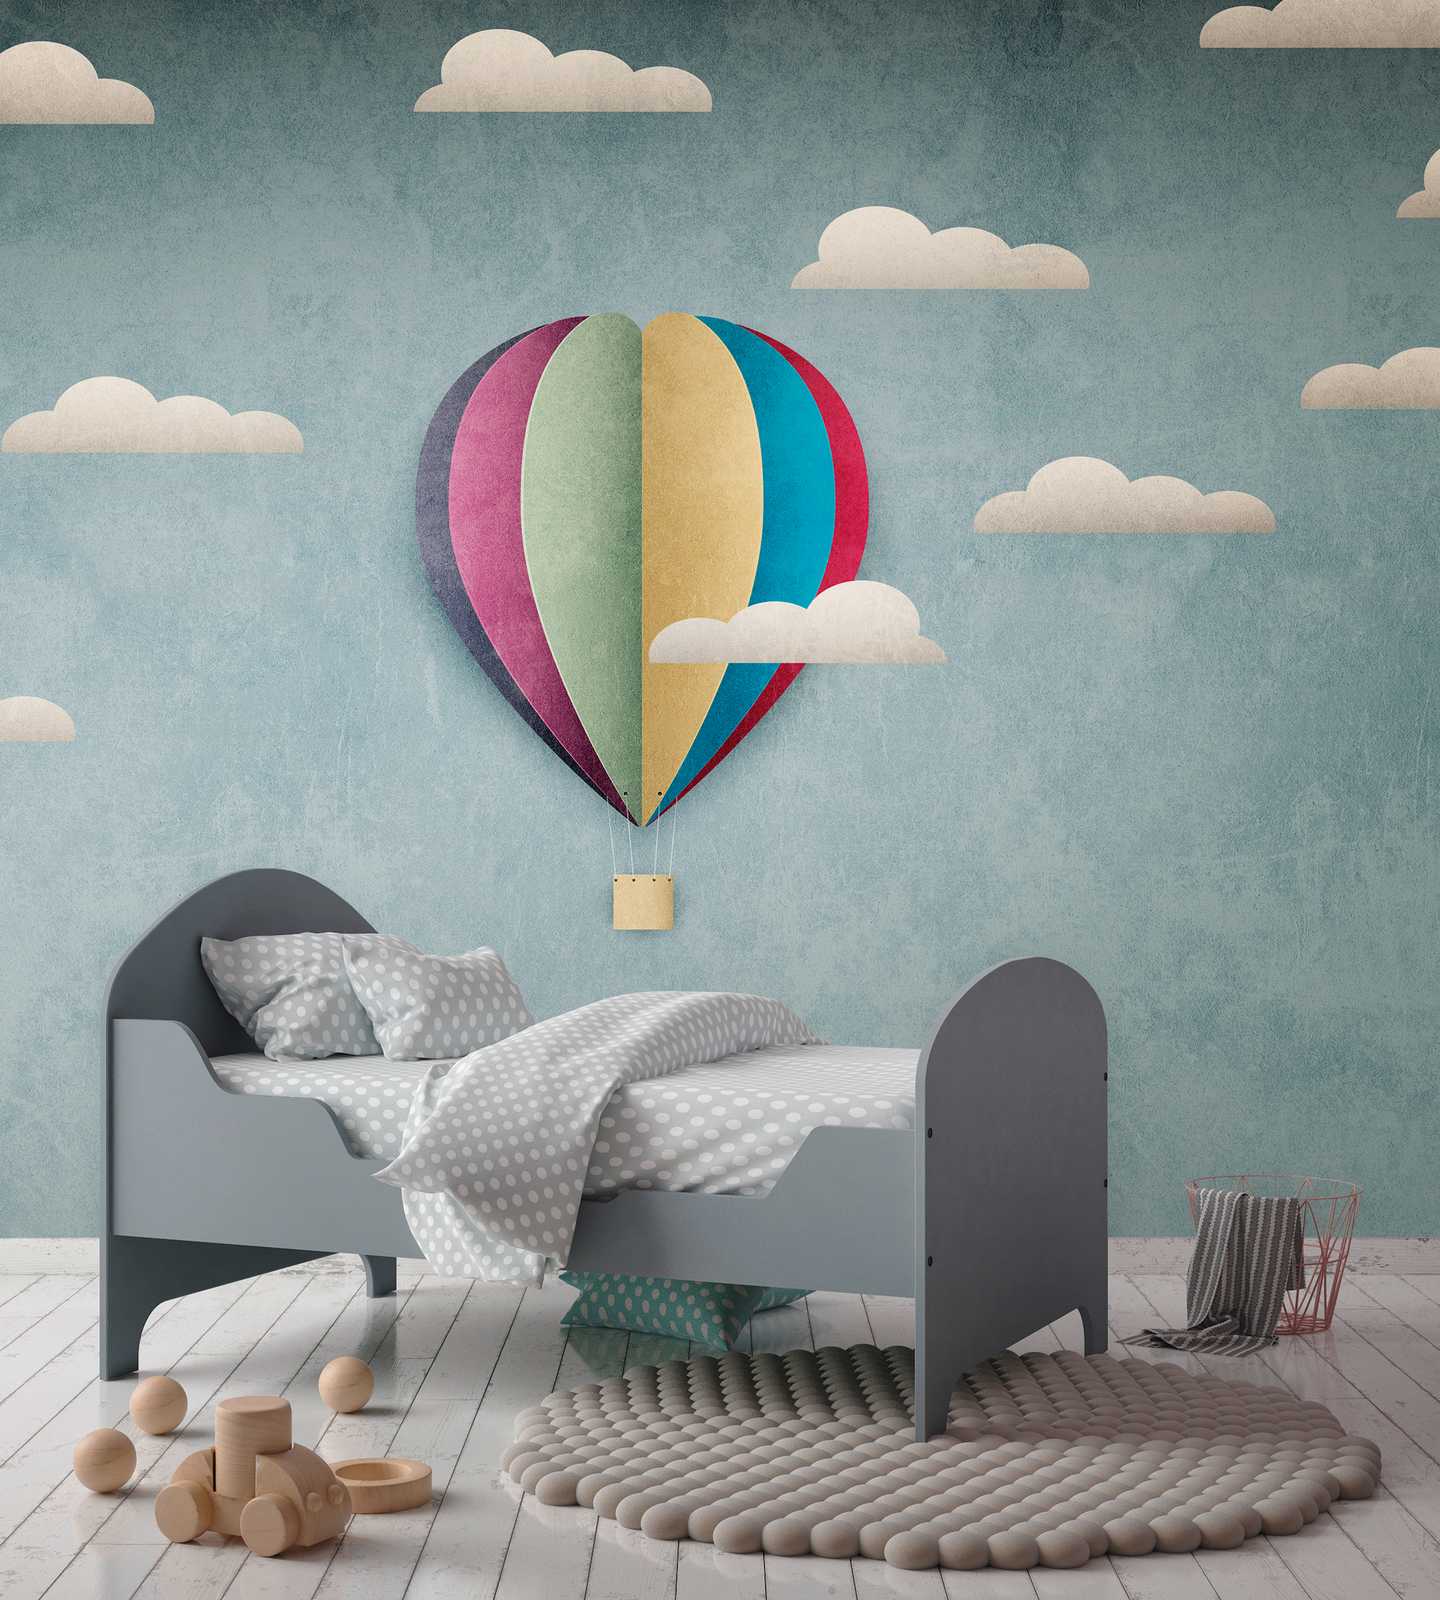             behang nieuwigheid | motief behang luchtballon & bewolkte hemel voor kinderen
        